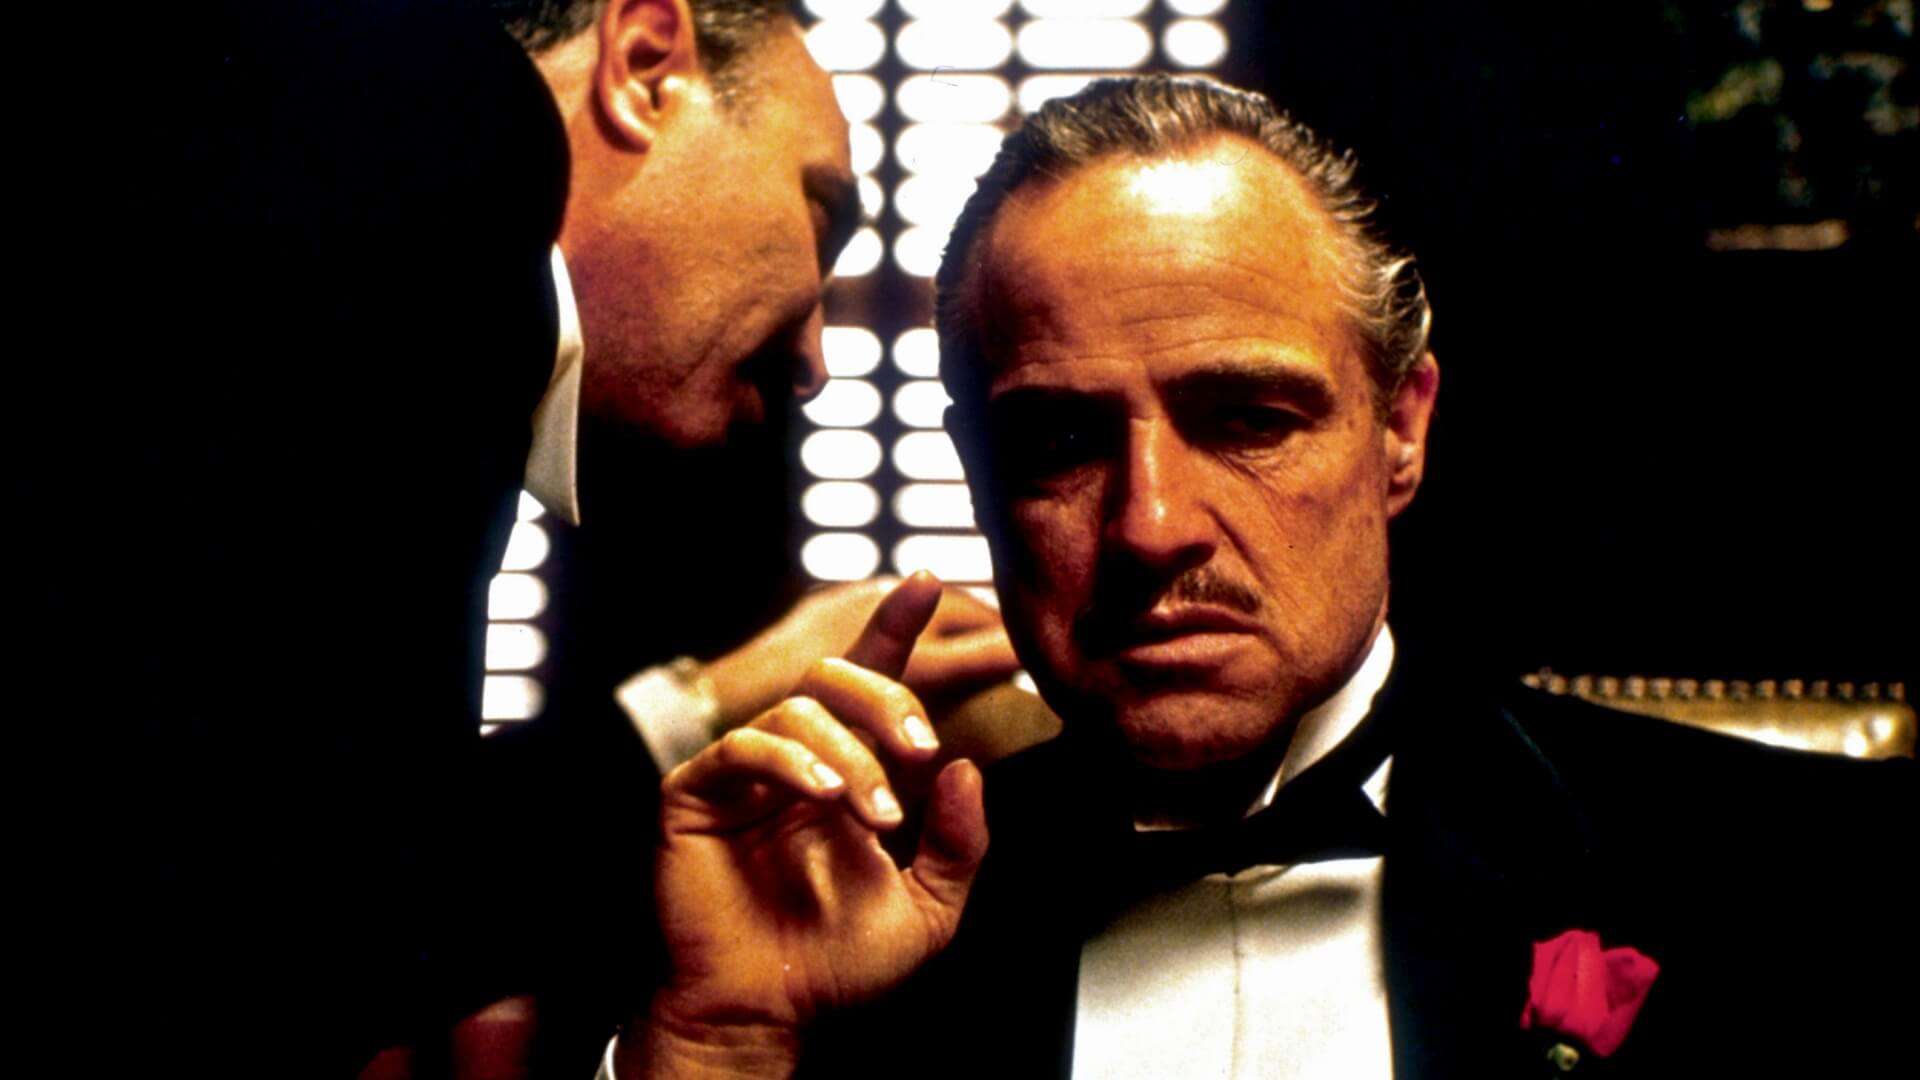 Personaggi iconici: Don Vito Corleone, il Padrino